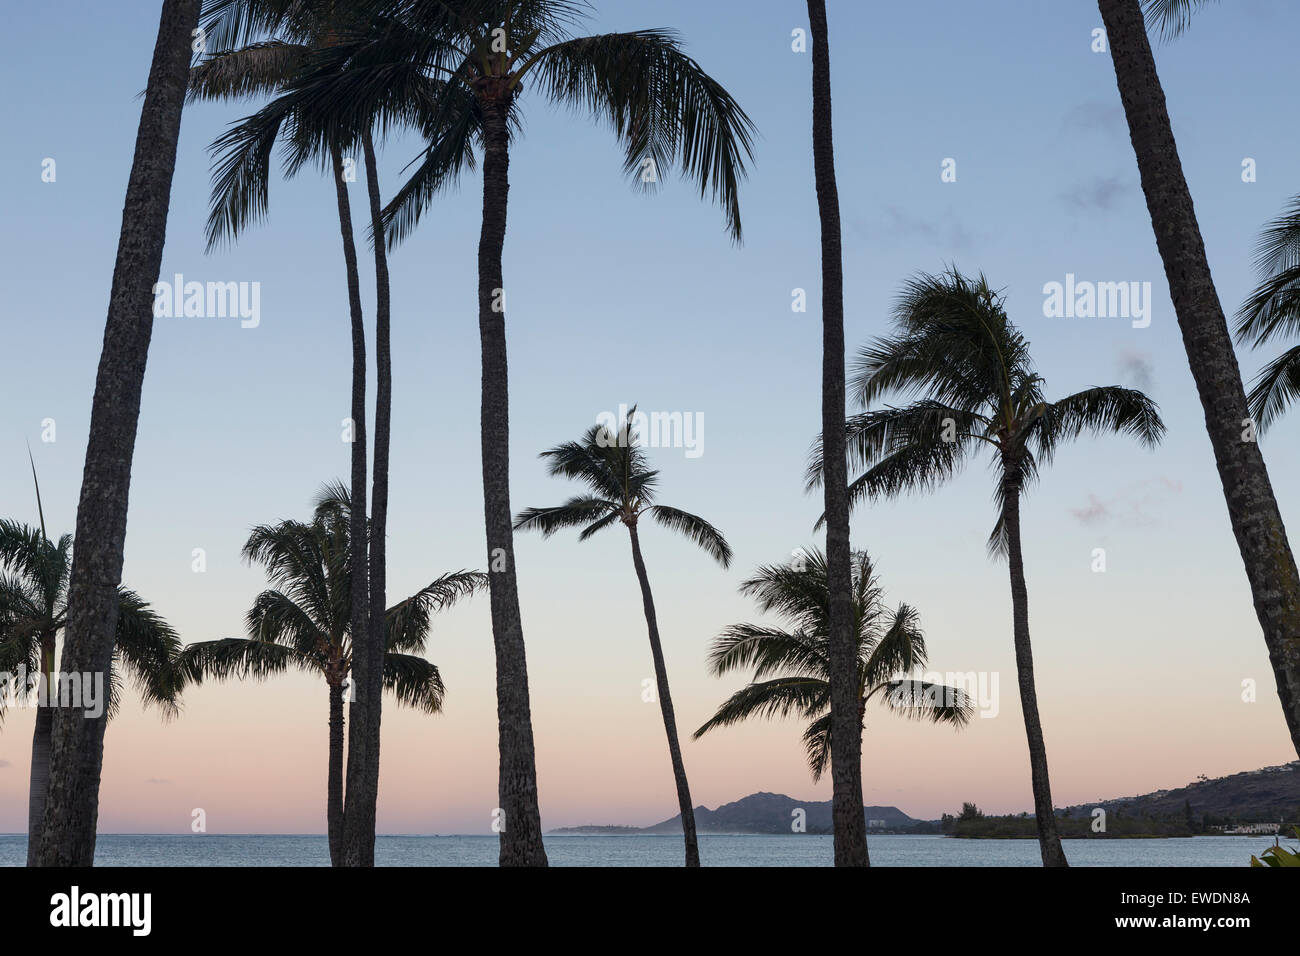 La silhouette des palmiers à Hawaii Kai avec vue sur Diamond Head, Oahu. Banque D'Images